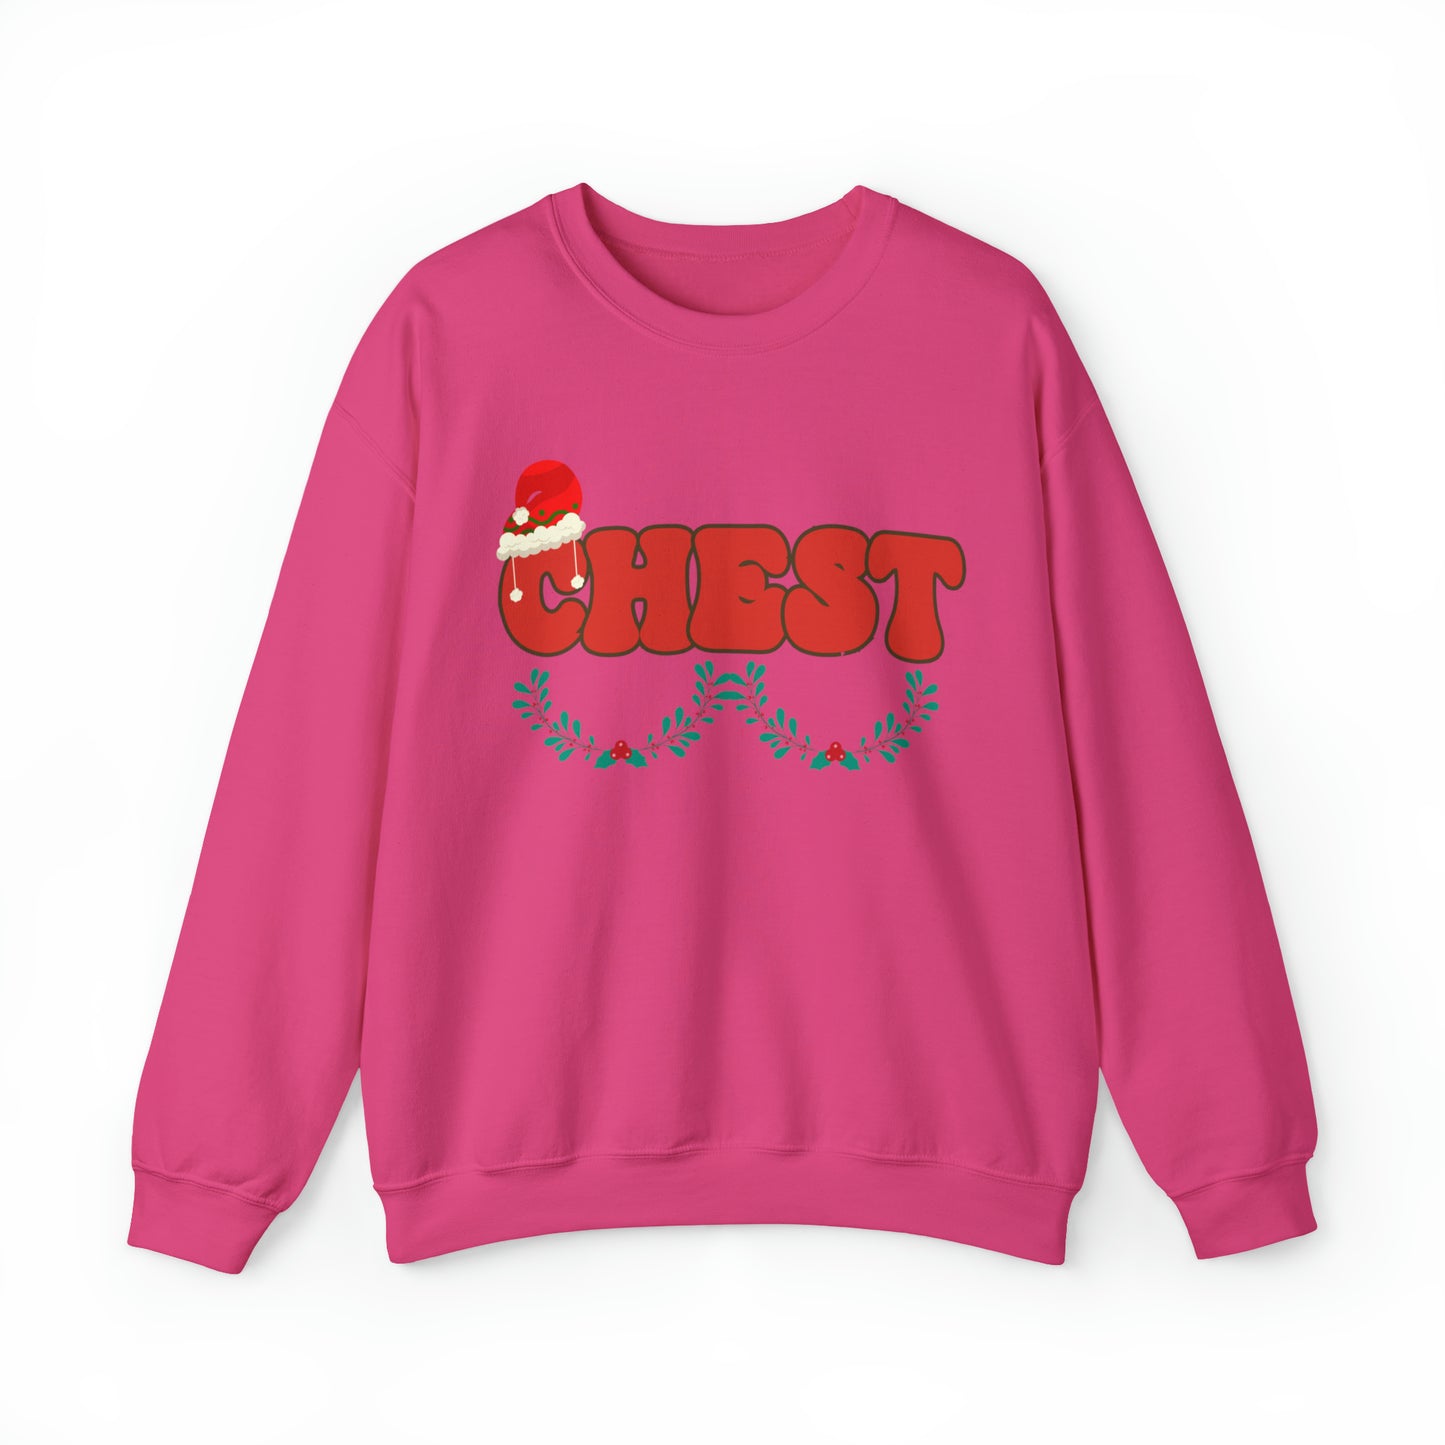 Couple Chest Nuts Crewneck Sweatshirt, Christmas Holiday Sweatshirt, Christmas Gift for Couples, Funny Matching Christmas Sweatshirt, SW950